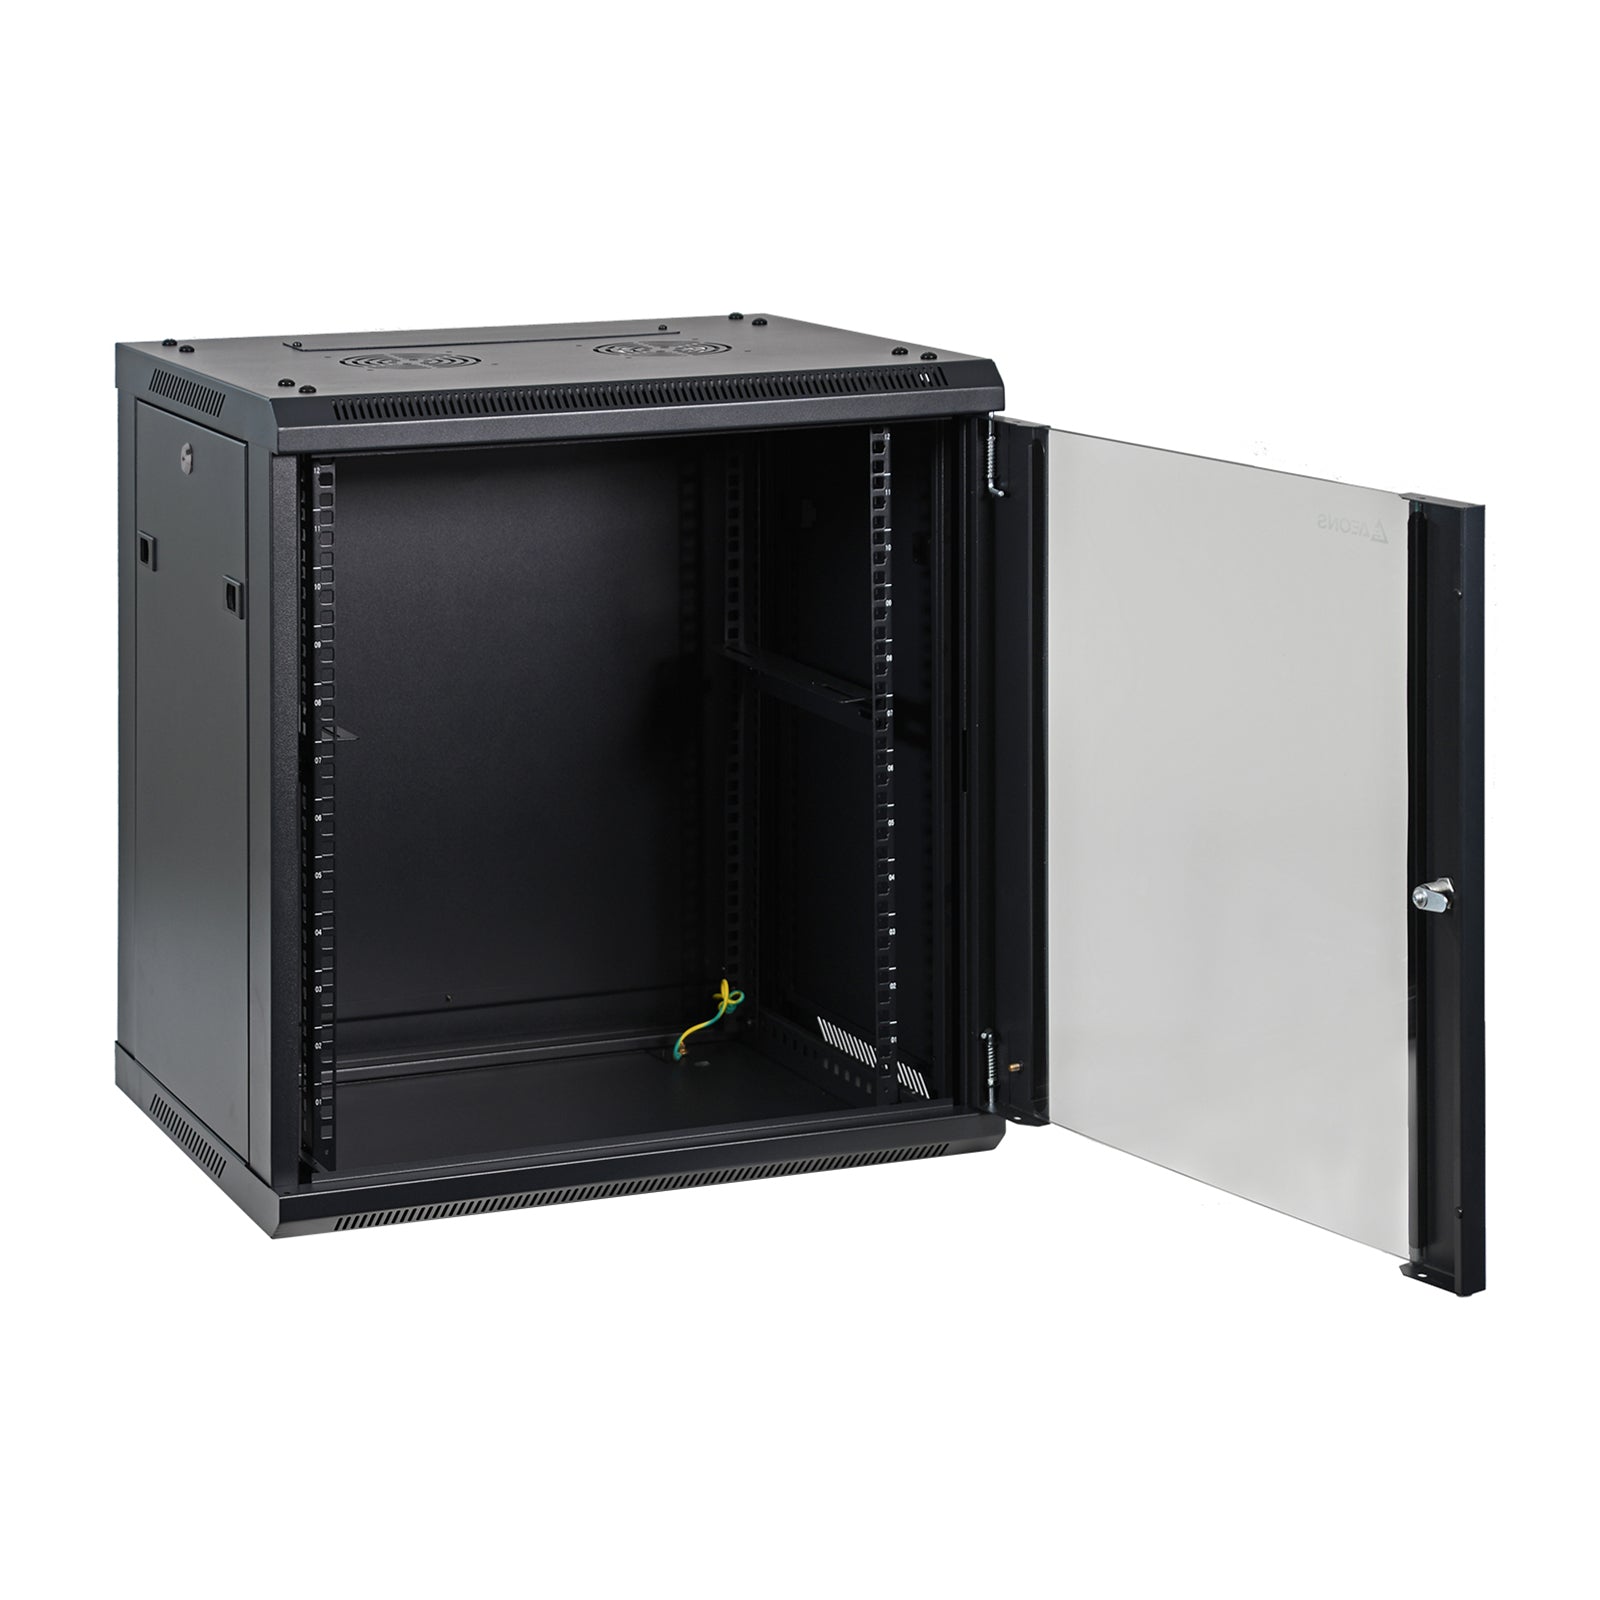 Aeons SP Series 12U Wall-Mount Rack Cabinet, Switch-Depth, Glass Door